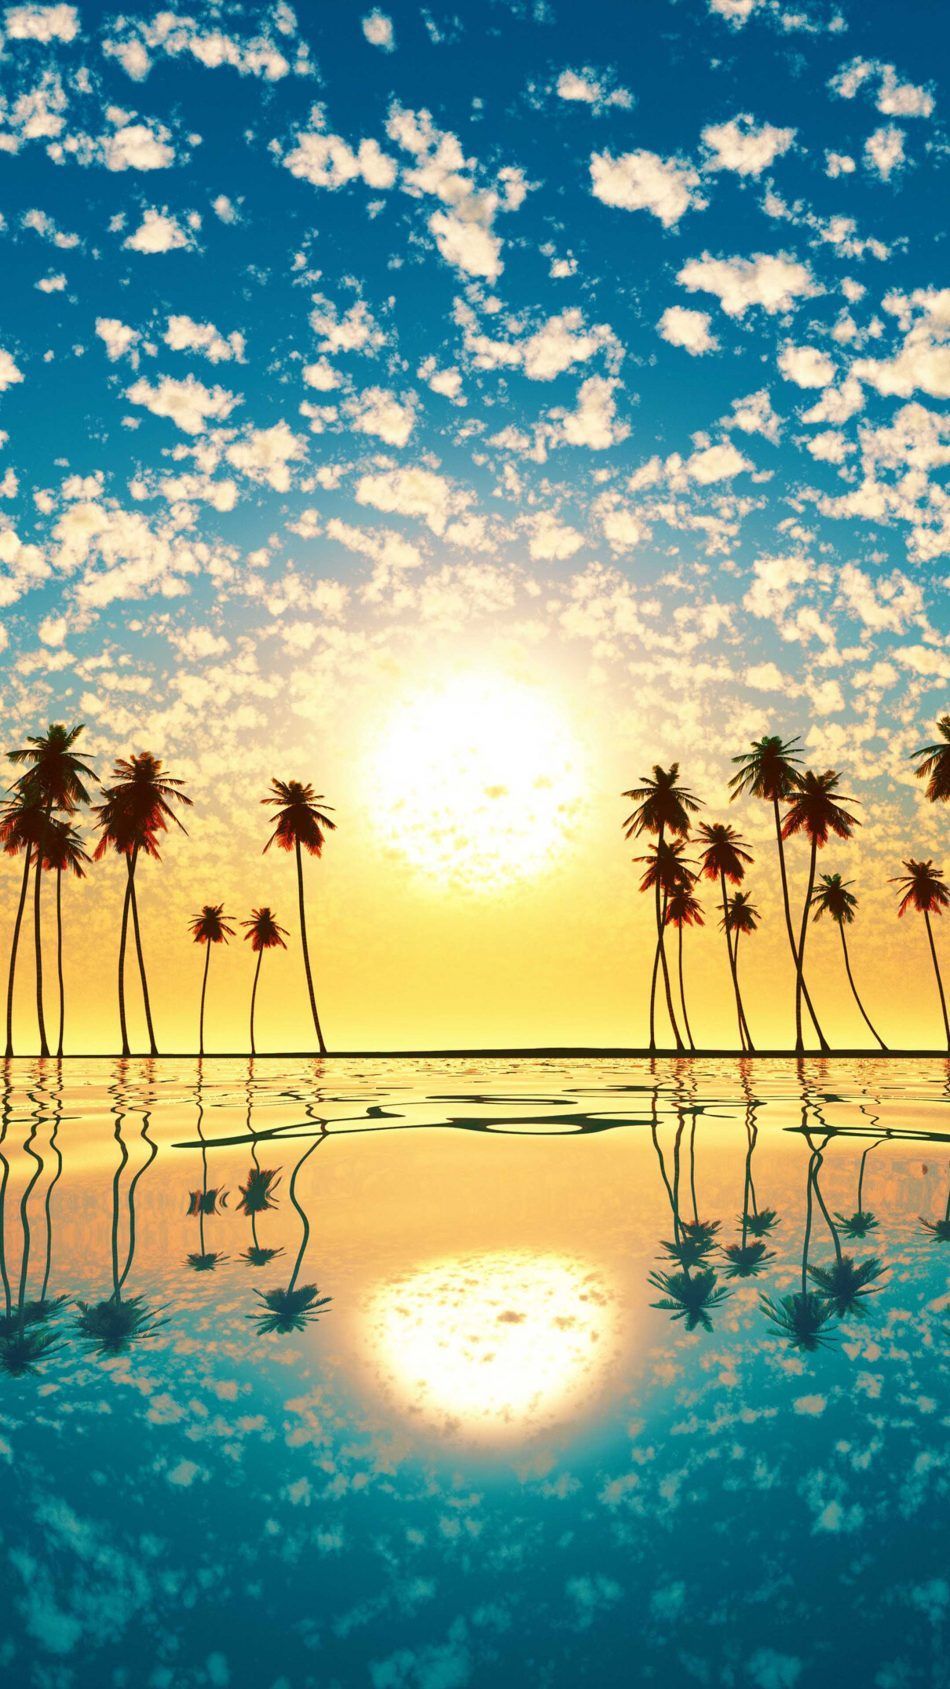 Sunset Palm Tree Cloud Sky Reflection 4K Ultra HD Mobile Wallpaper. Scenery wallpaper, Best nature wallpaper, Beach phone wallpaper